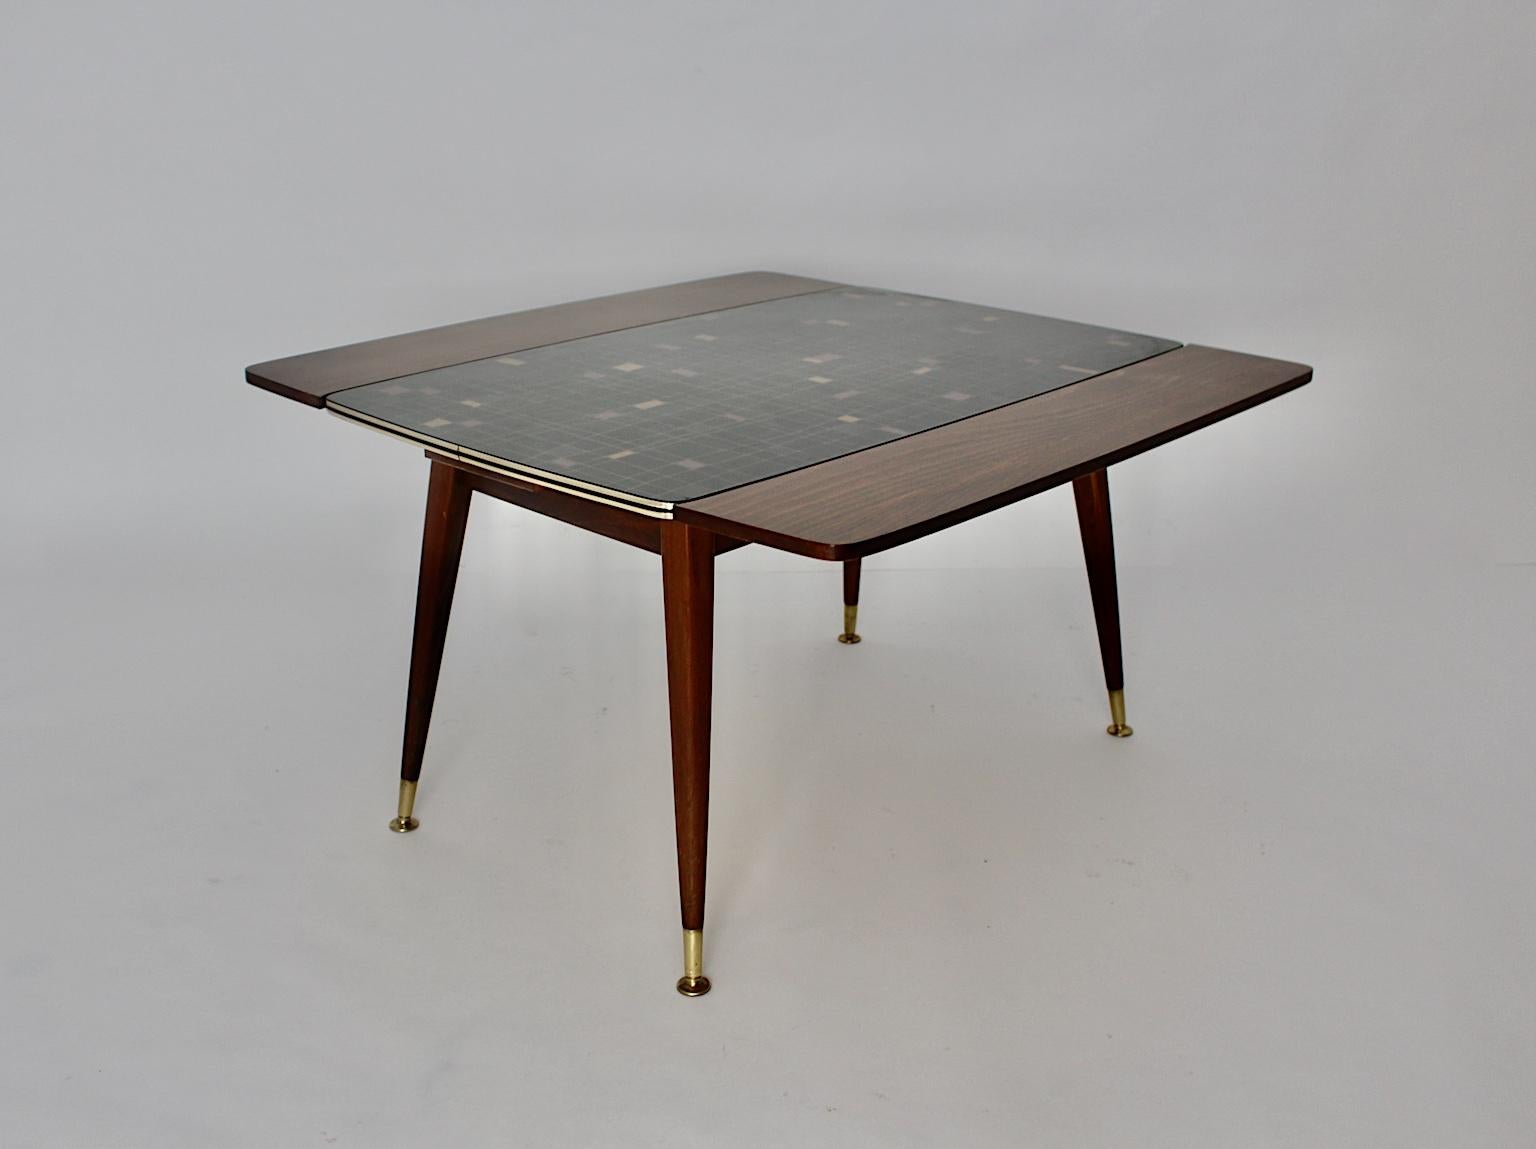 Ein Mid-Century Modern Vintage Buche Messing Sofa Tisch oder Esstisch, die erstellt wurde und 1950er Jahre Wien entworfen.
Der Sofatisch oder Esstisch wurde aus Buche, Pressspan, Formica, Metall und Messing hergestellt. Ein großartiges Designmerkmal